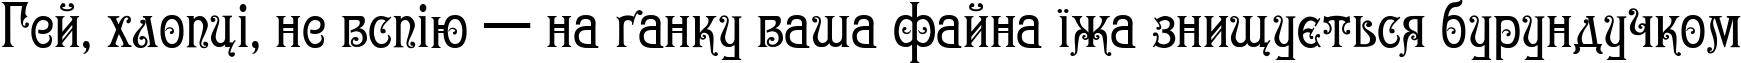 Пример написания шрифтом Gertruda Victoriana Normal текста на украинском